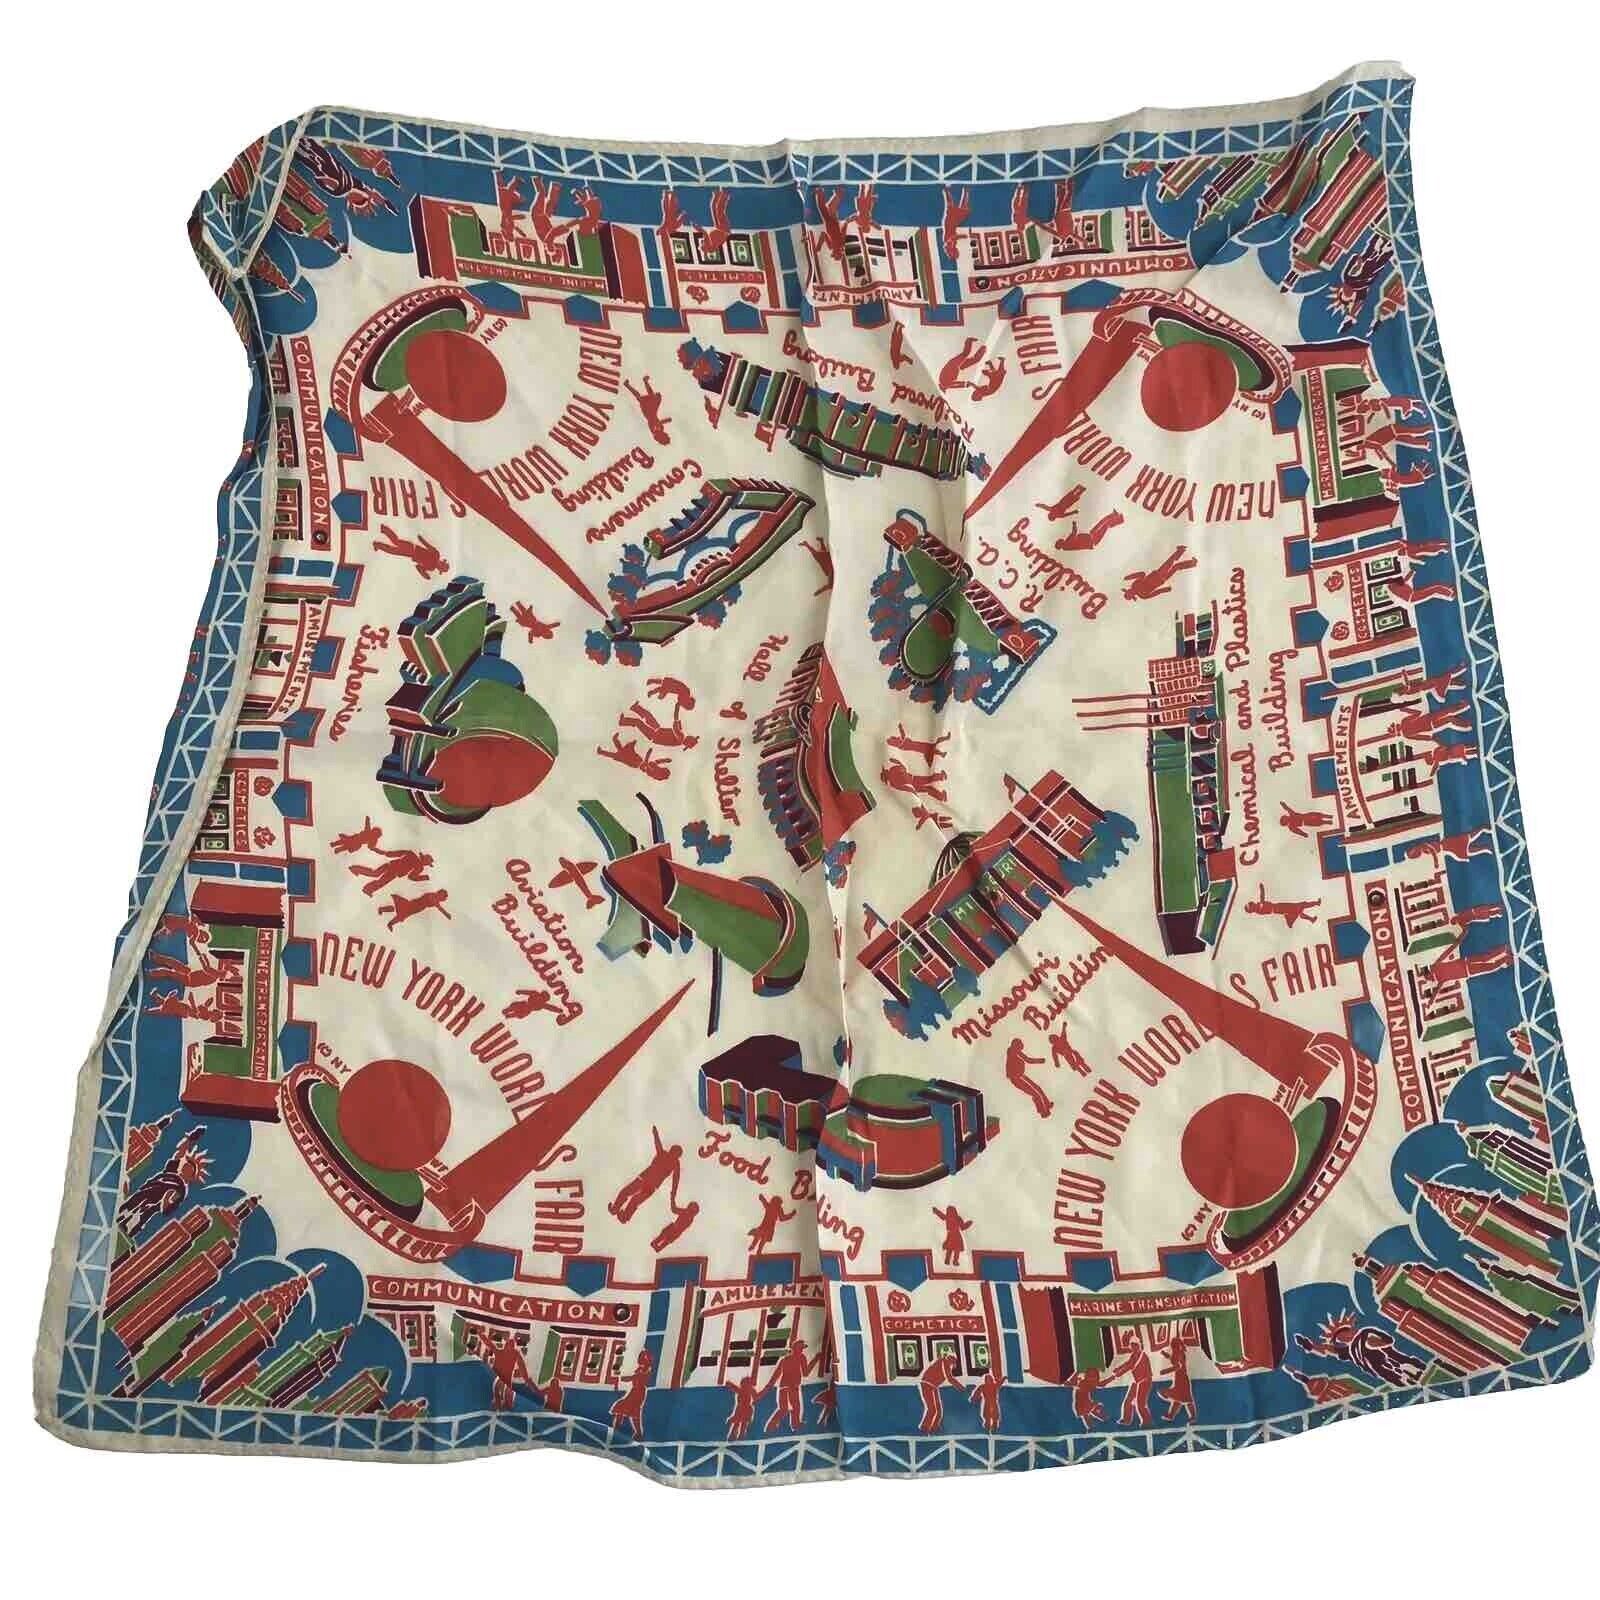 Antique NEW YORK Worlds Fair SOUVENIR SCARF Handkerchief HANKIE Vintage